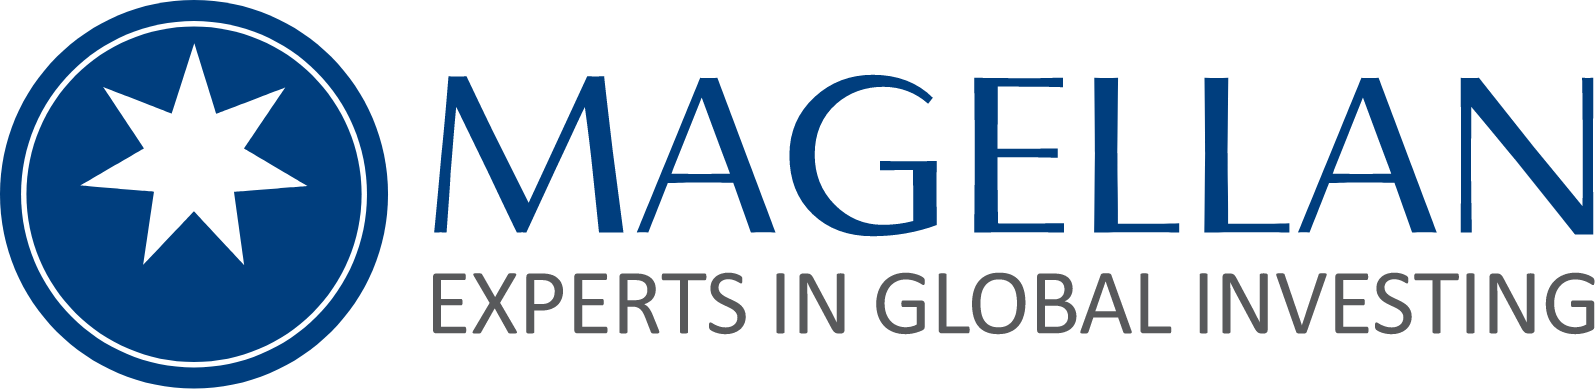 Magellan Financial Group logo large (transparent PNG)